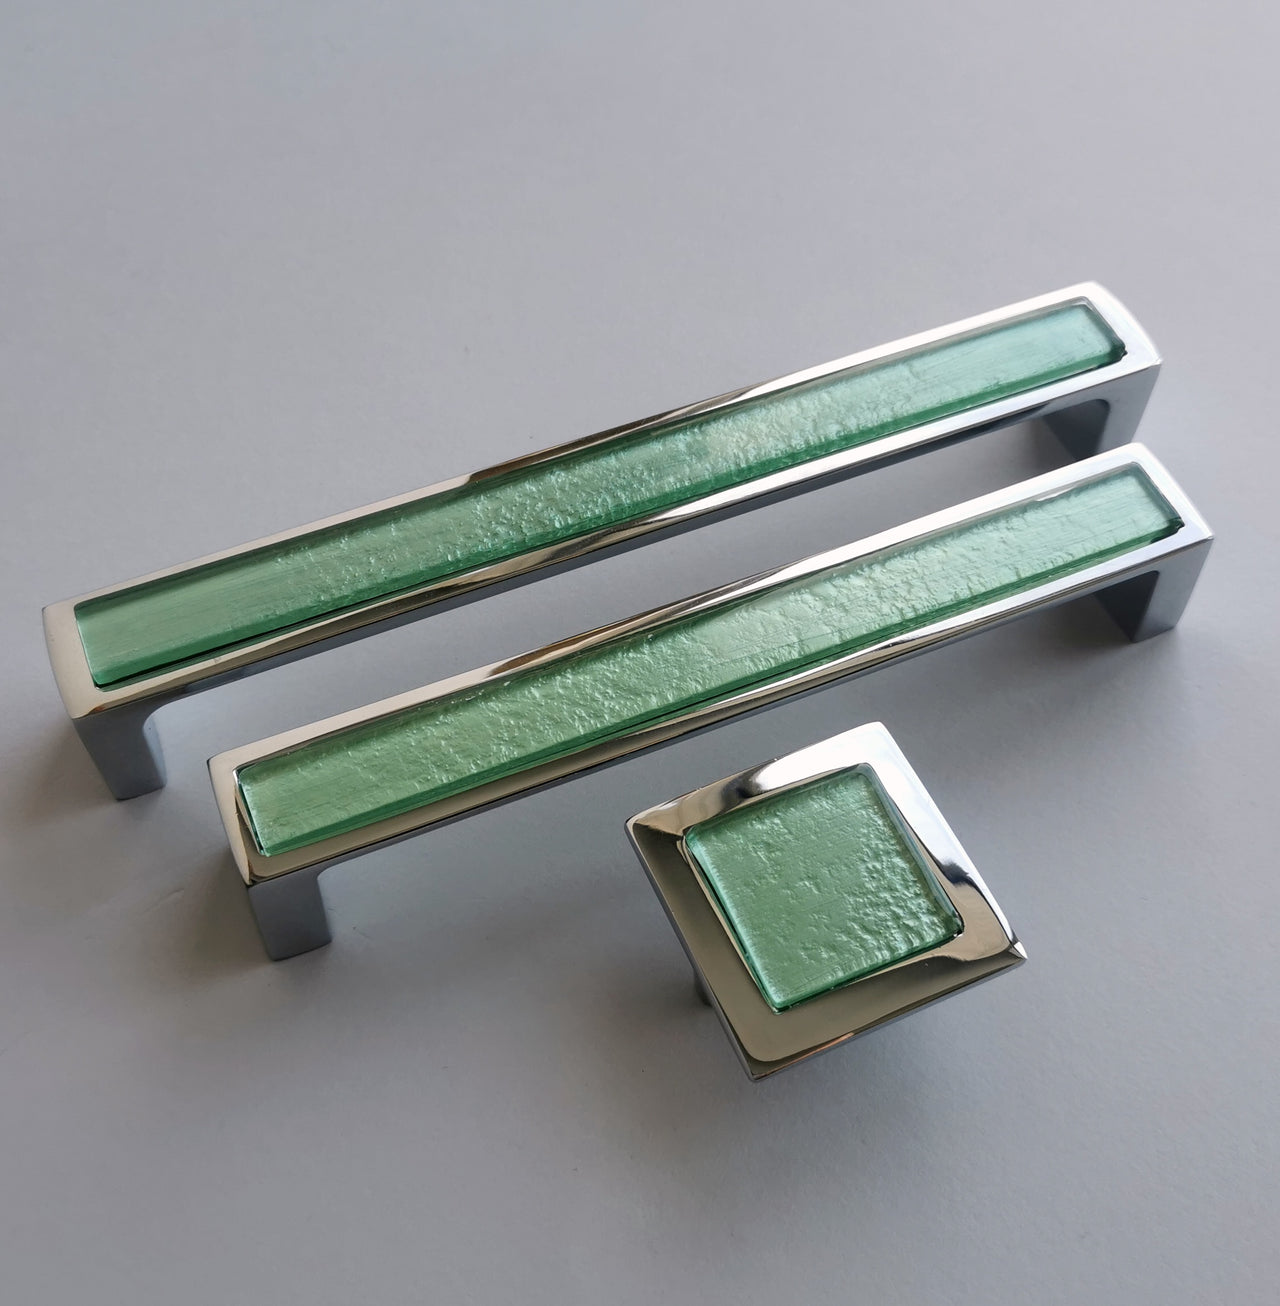 Modern Pale Mint Green Glass Pop-up Pull/Knob. Pop-up Glass Handles - 0042